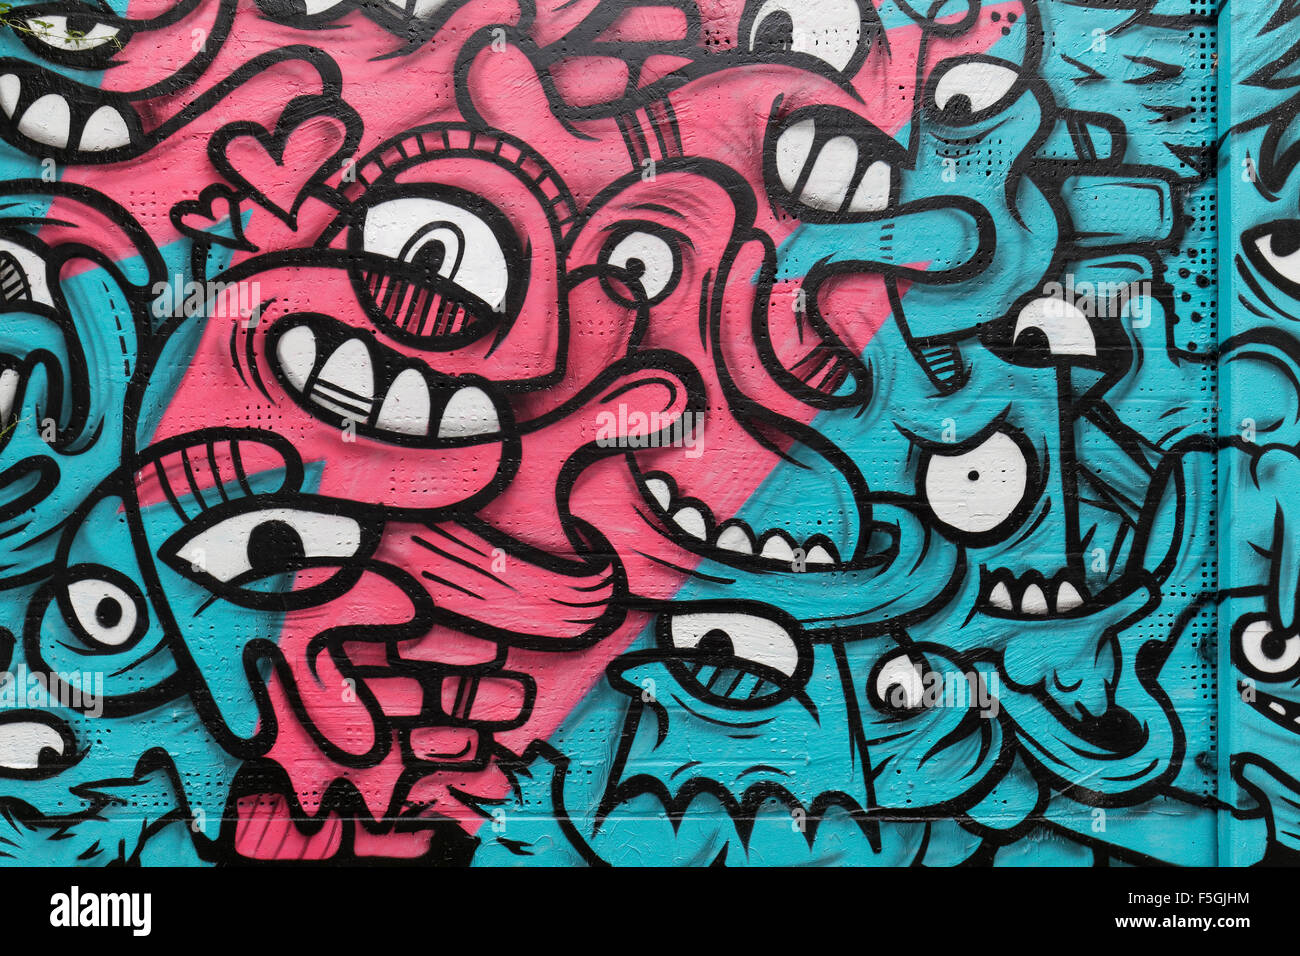 Patrón de rostros entrelazados, graffiti, street art, arte urbano Festival 40 Grad, Dusseldorf, Renania del Norte-Westfalia, Alemania Foto de stock